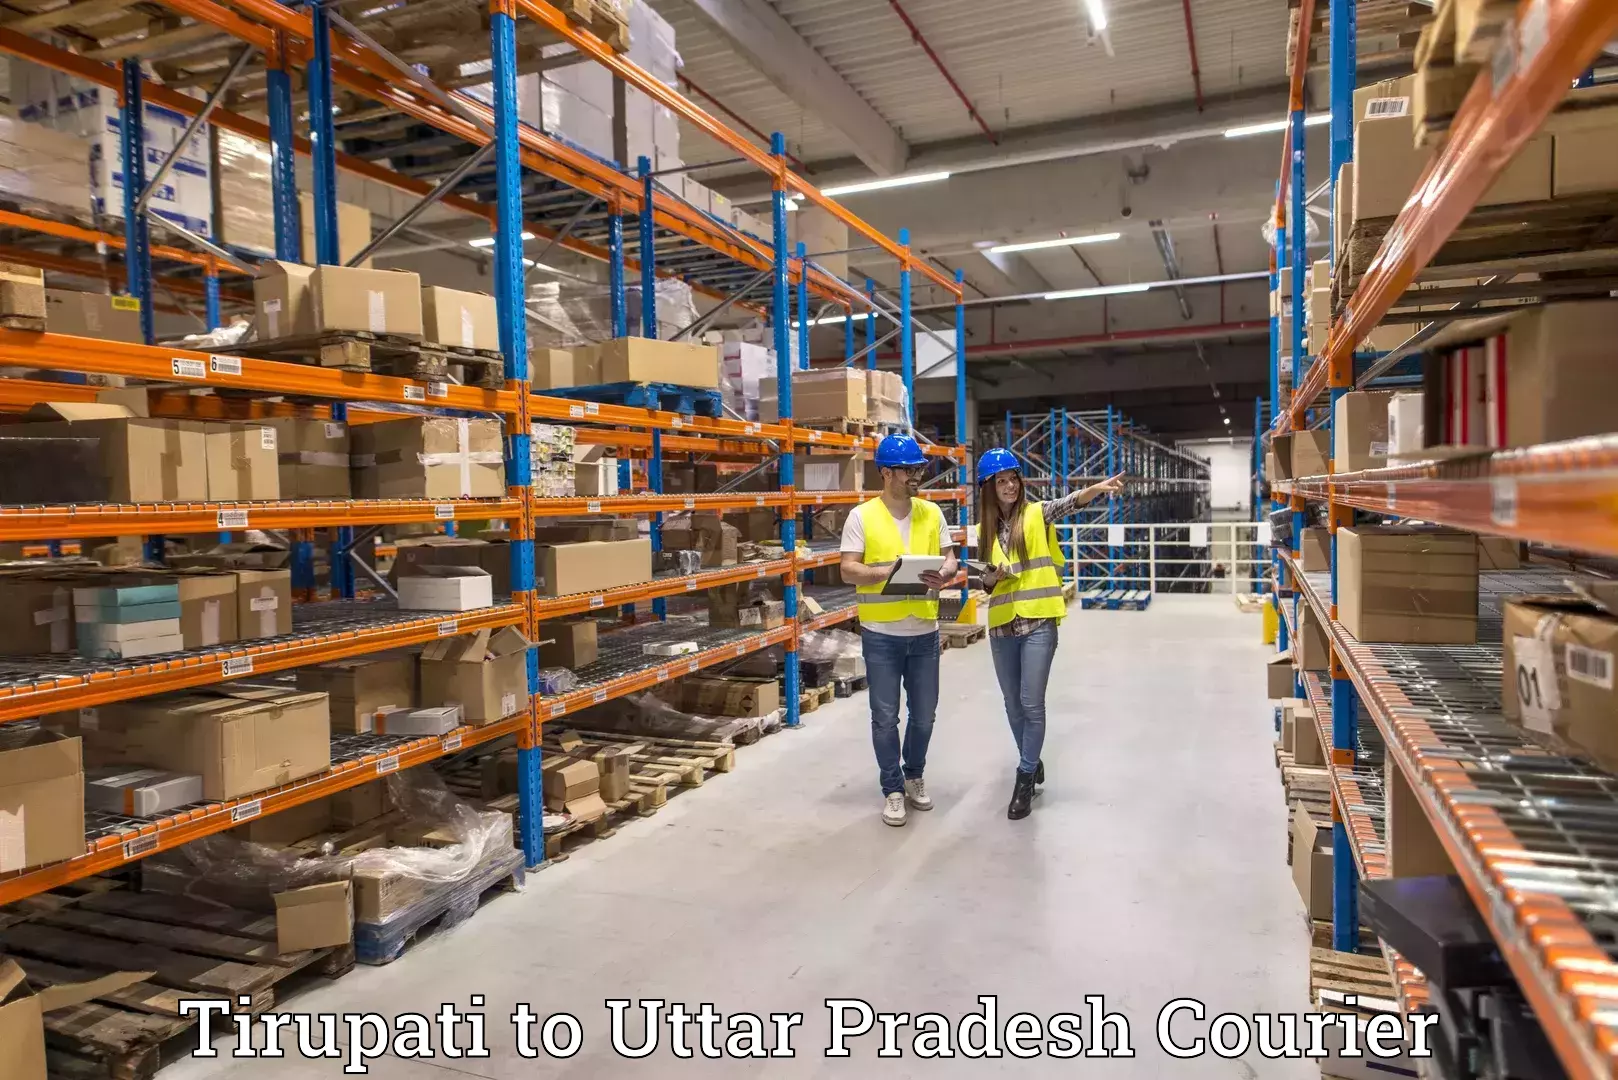 Reliable parcel services Tirupati to Hathras